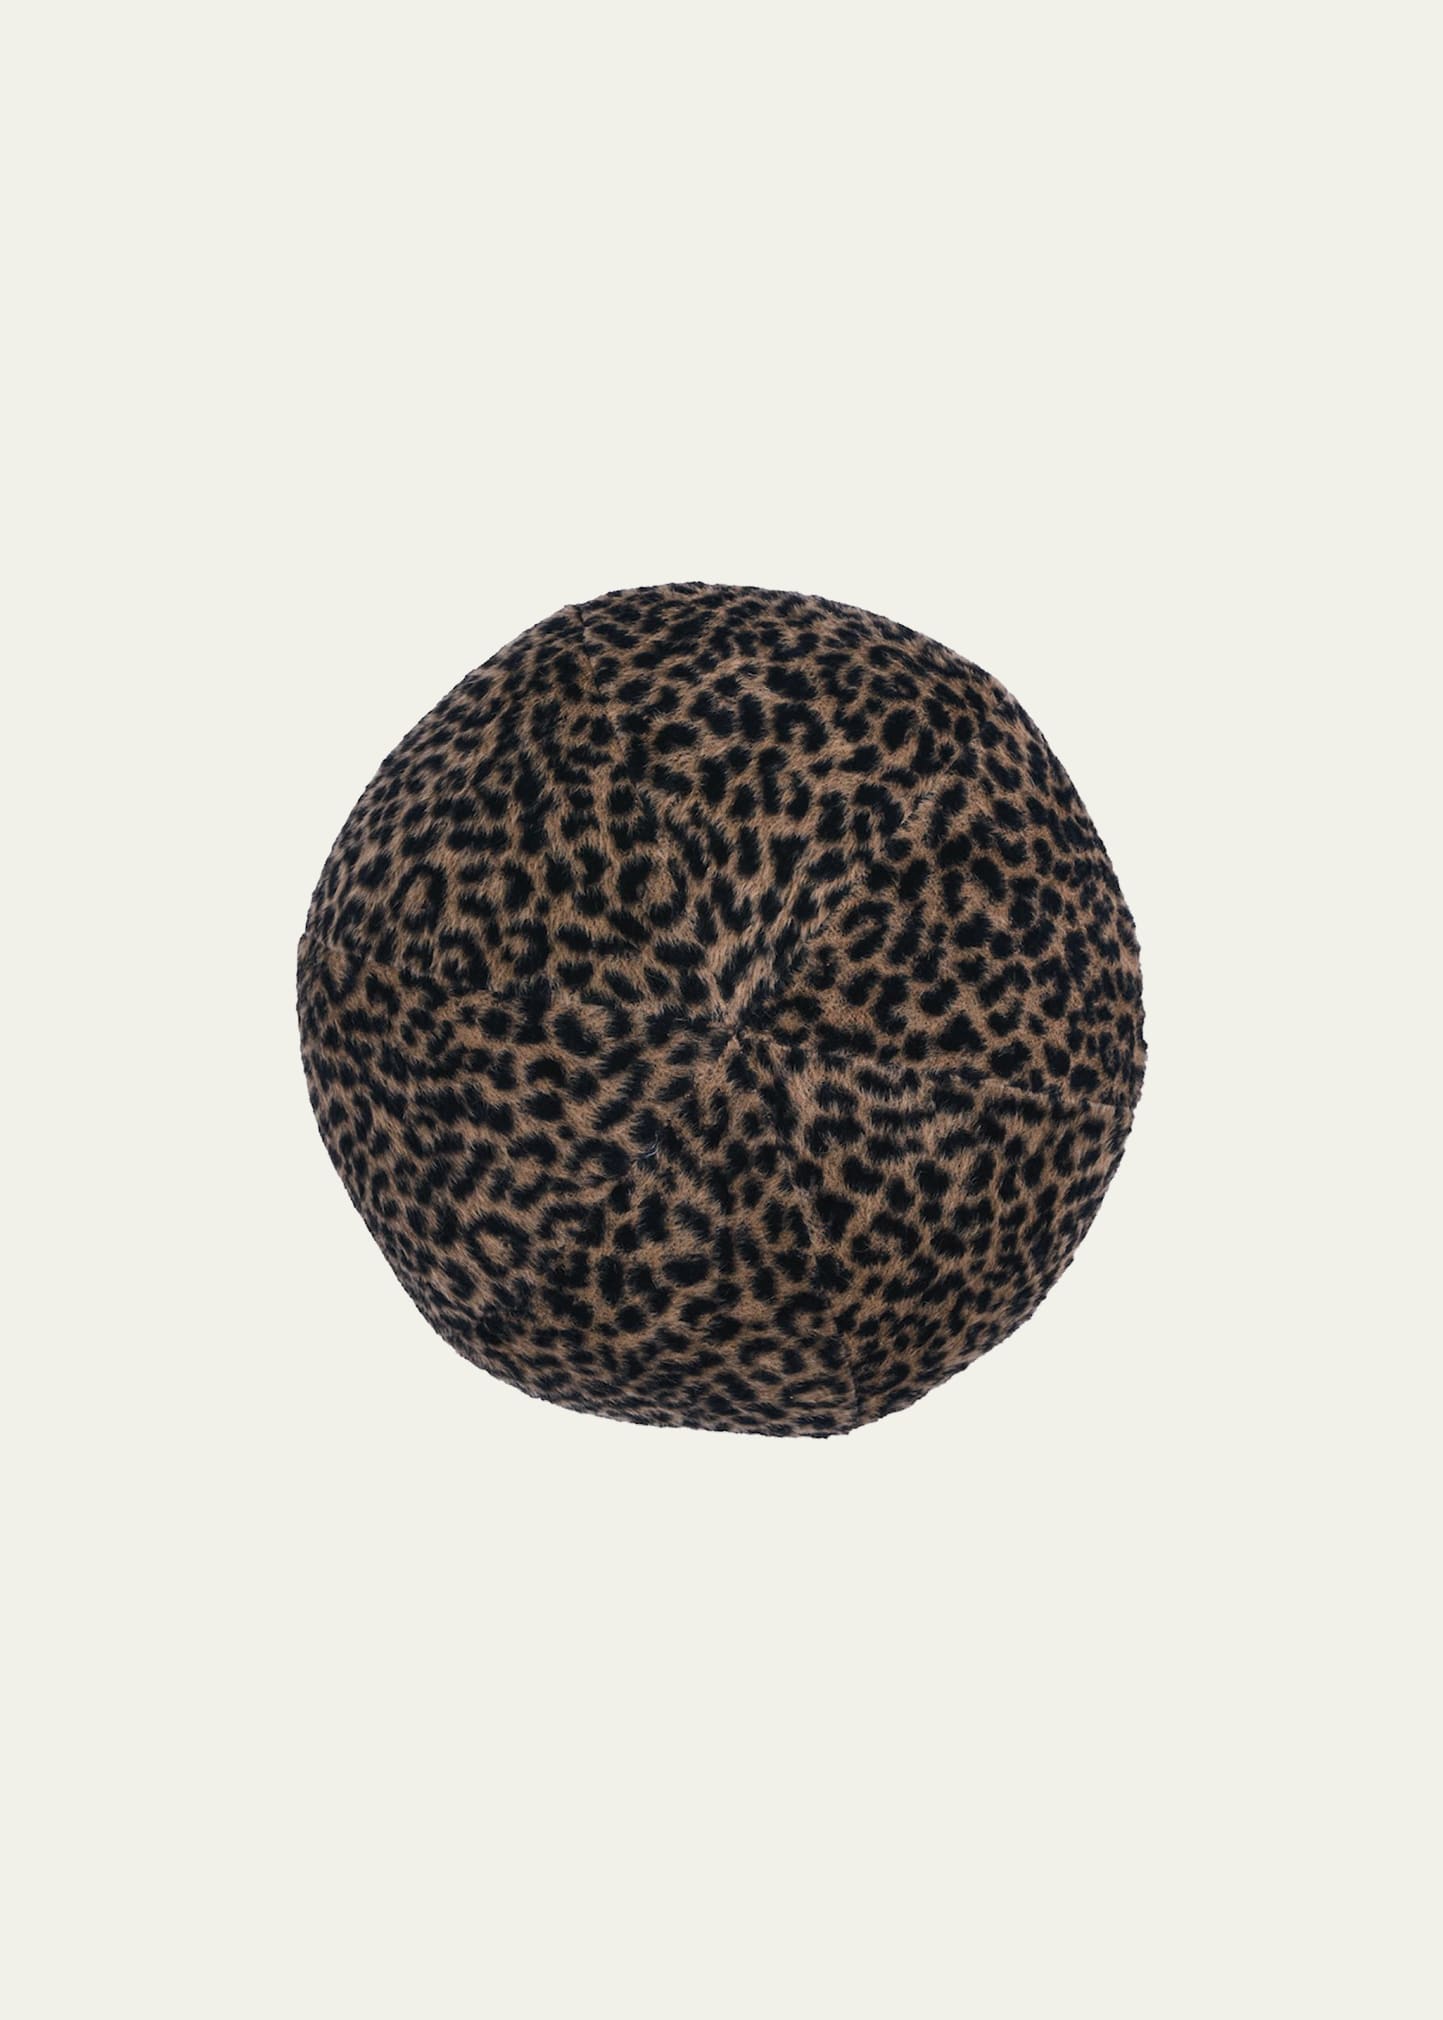 Schumacher Lilya Leopard Sphere Pillow In Animal Print